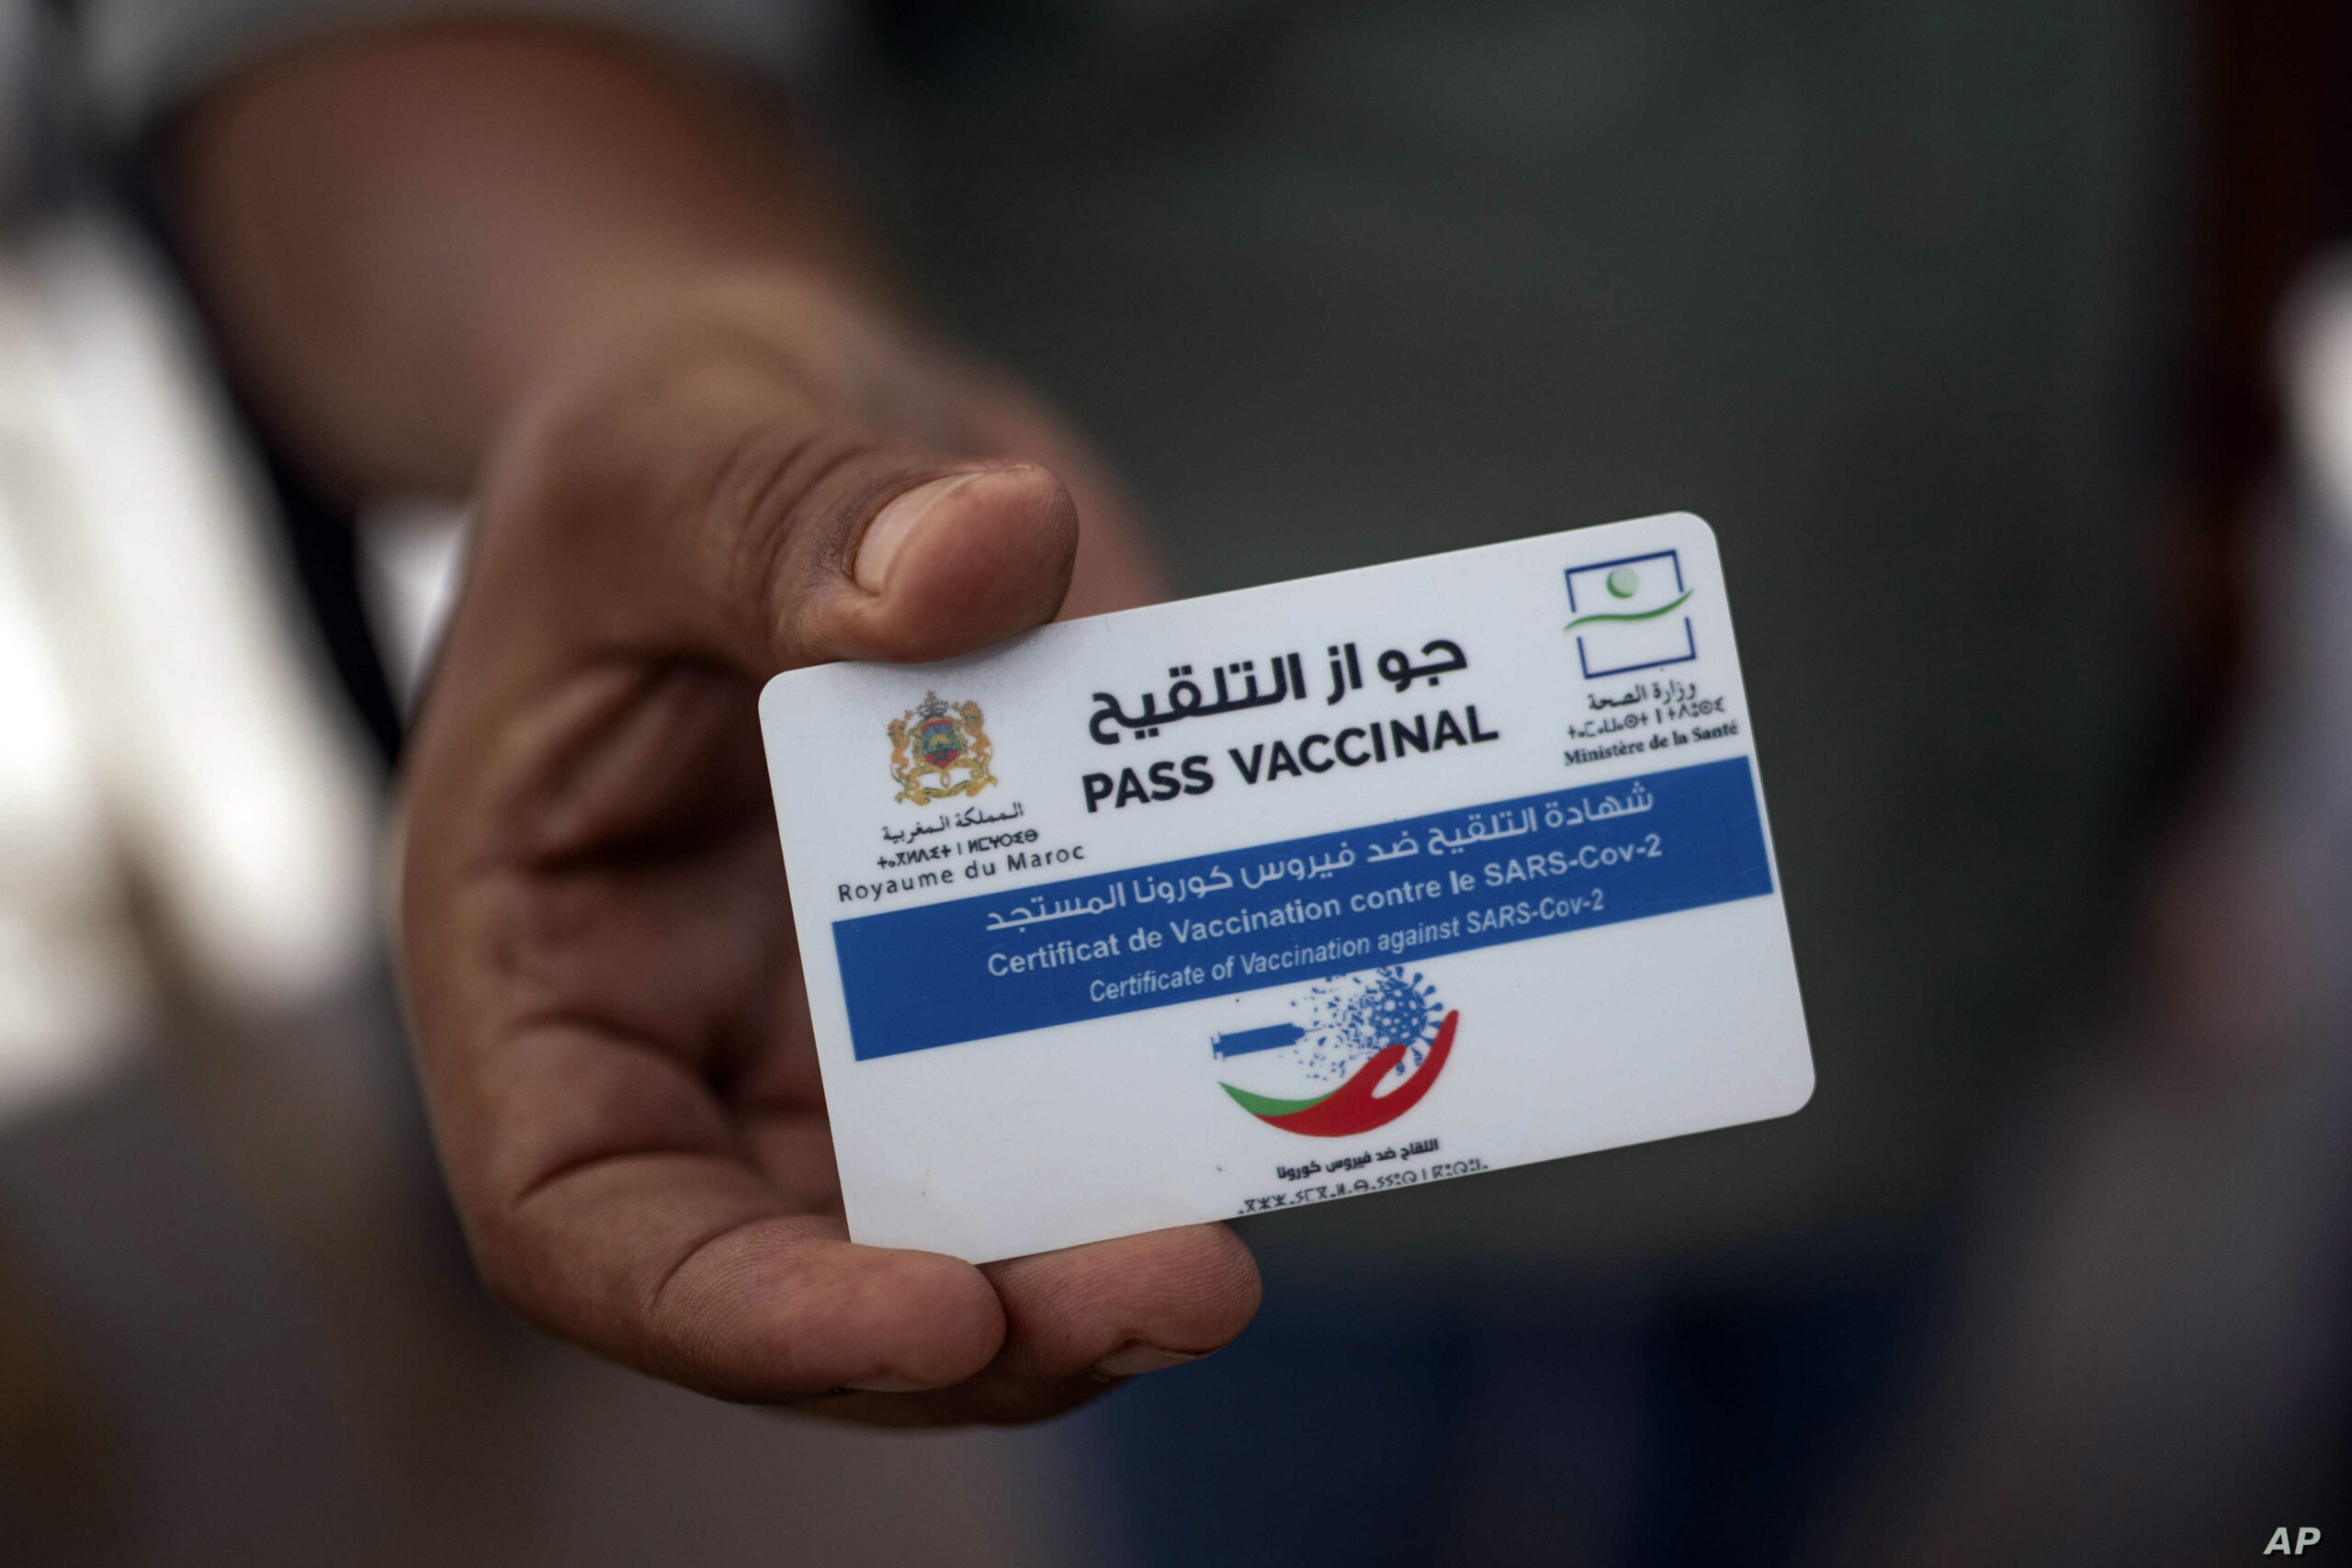 البيضاء: الأمن يوقف 8 أشخاص لتزويرهم جوازات التلقيح لغير المطعمين